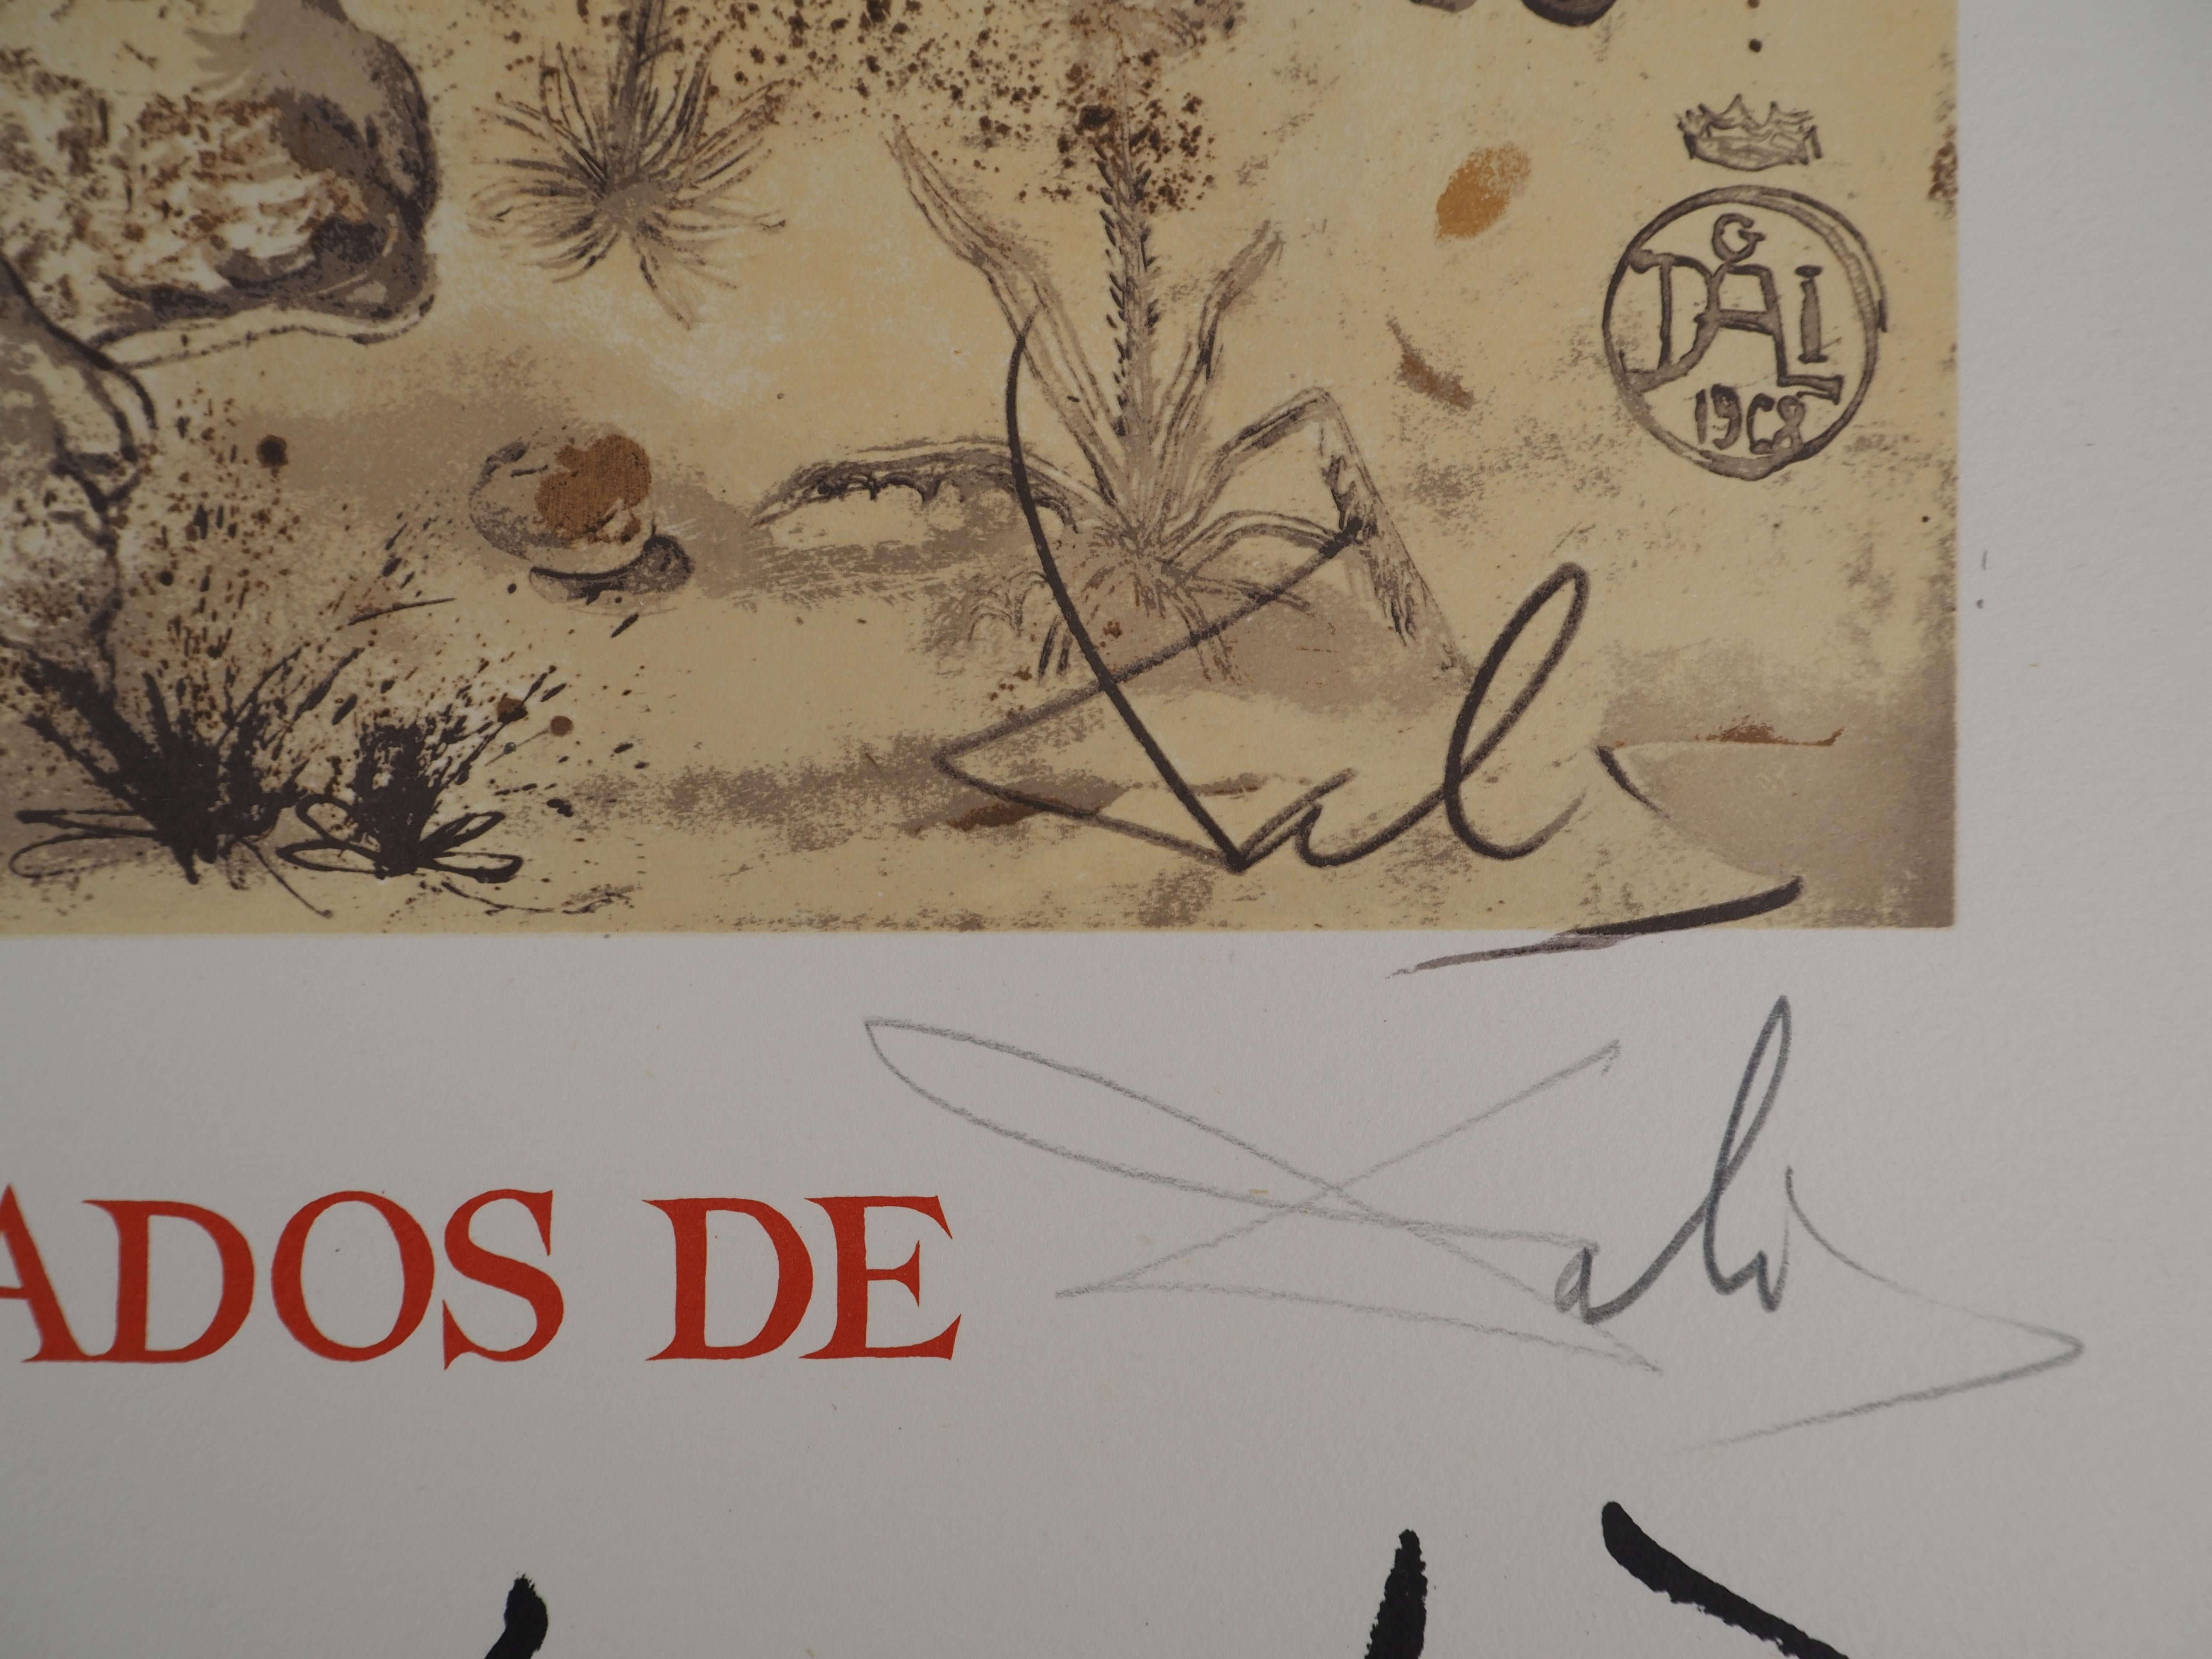 Rhinoceros, Hommage à Albrecht DURER - Affiche lithographique signée (Gaspar n° 1503) - Print de Salvador Dalí